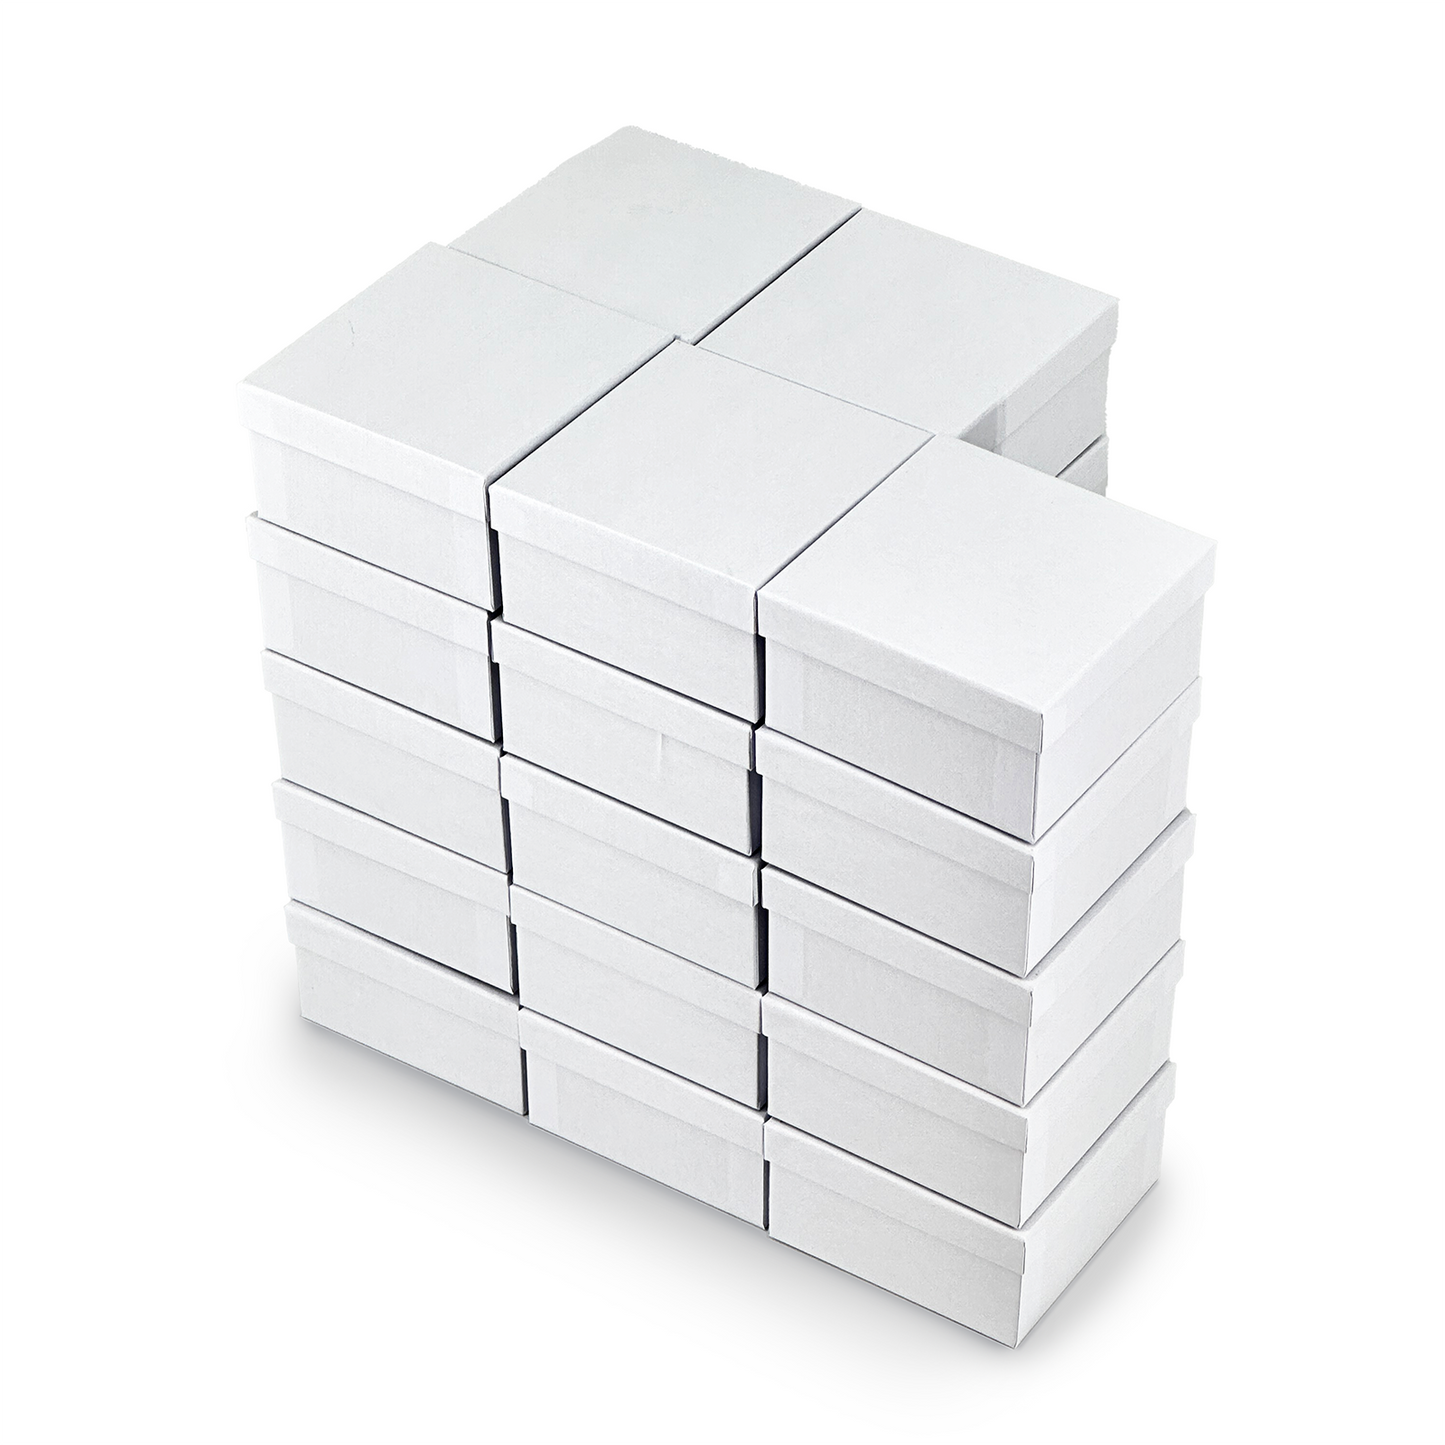 3 3/4" x 3 3/4" x 2" Matte White Cotton Filled Paper Box